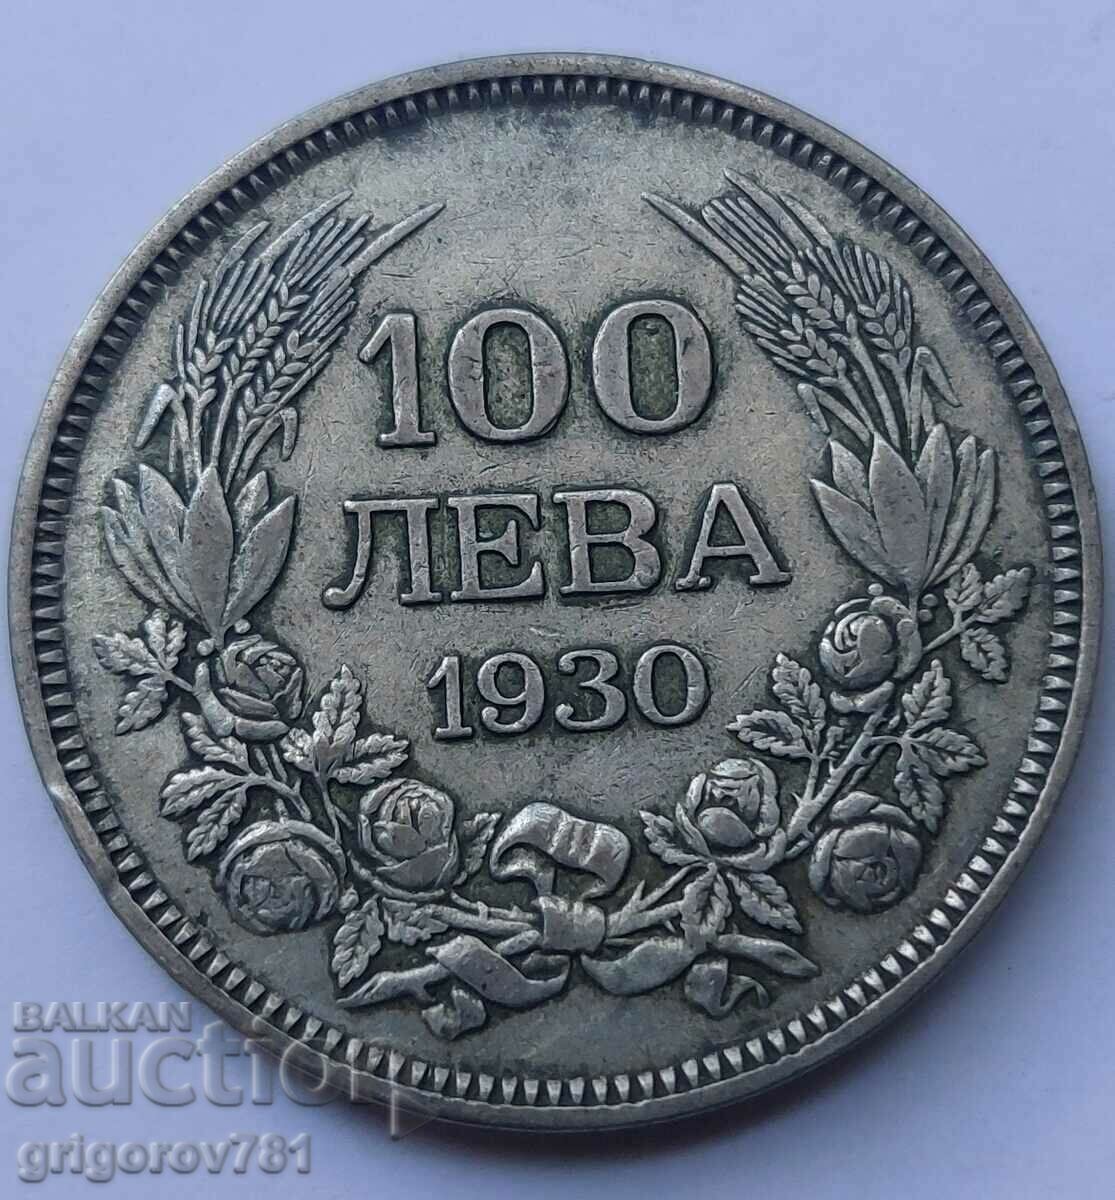 100 leva silver Bulgaria 1930 - silver coin #33